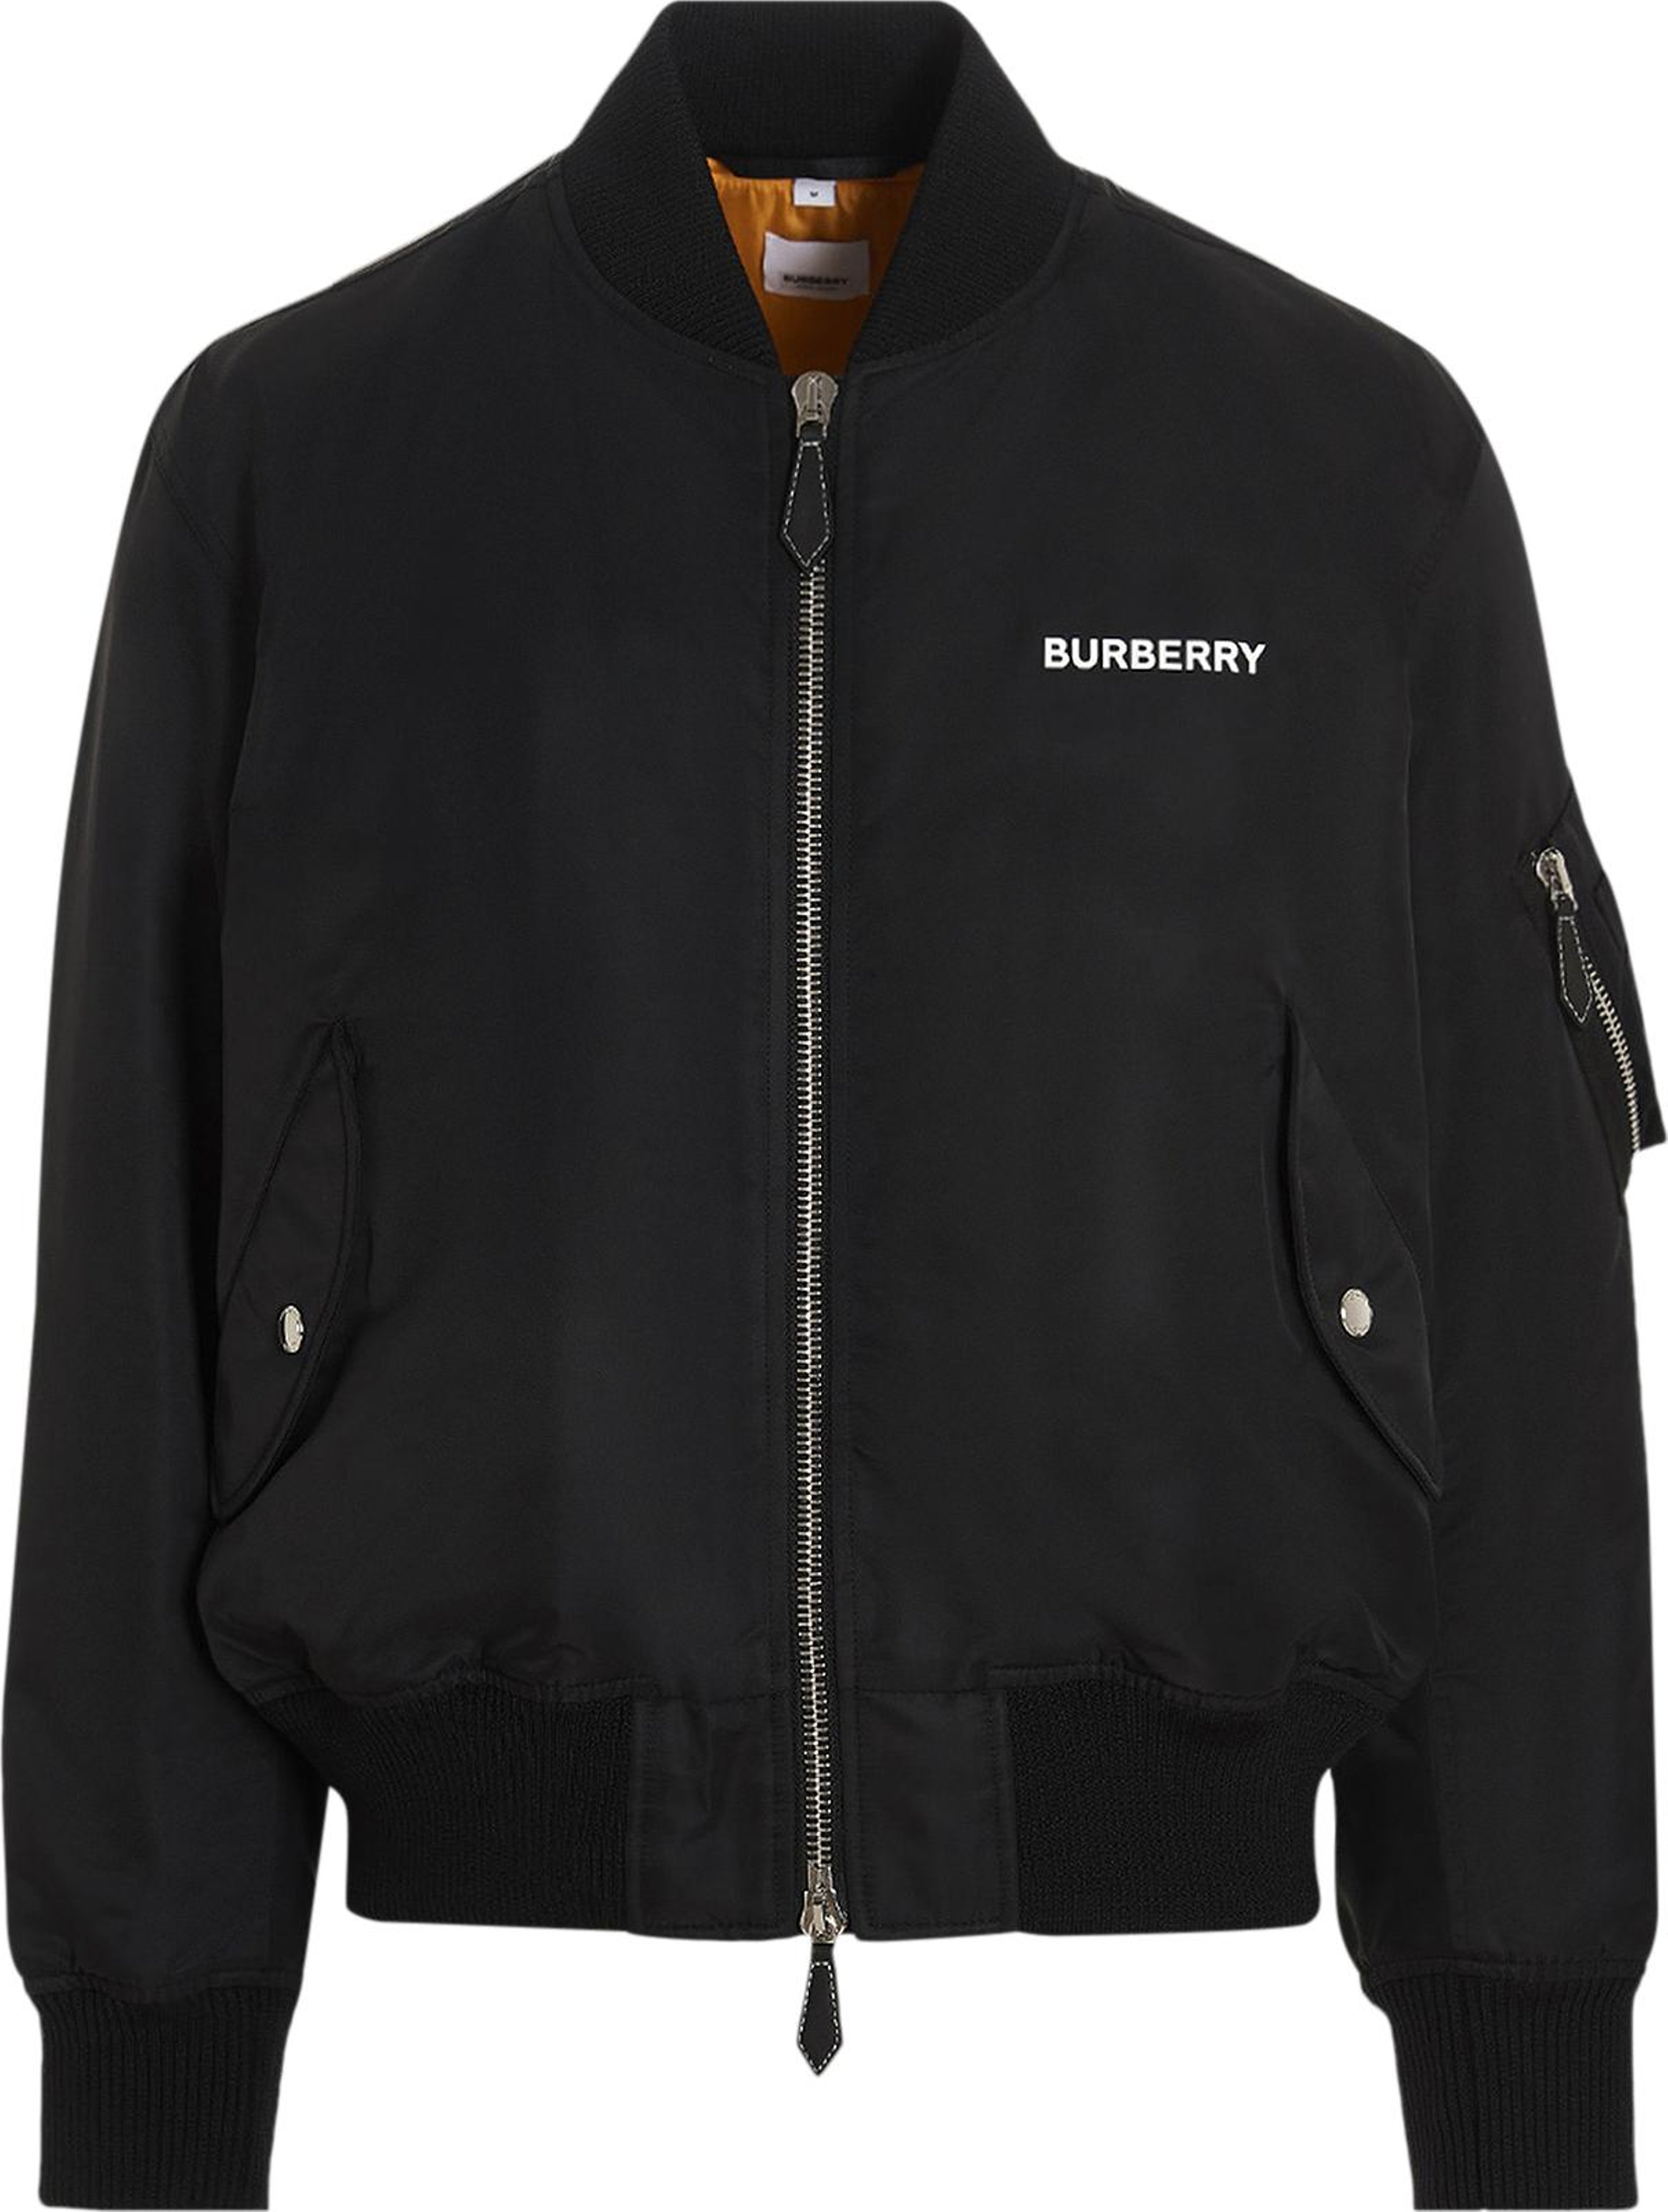 Buy Burberry Gillian Camp Bomber 'Black' - 8056117 | GOAT